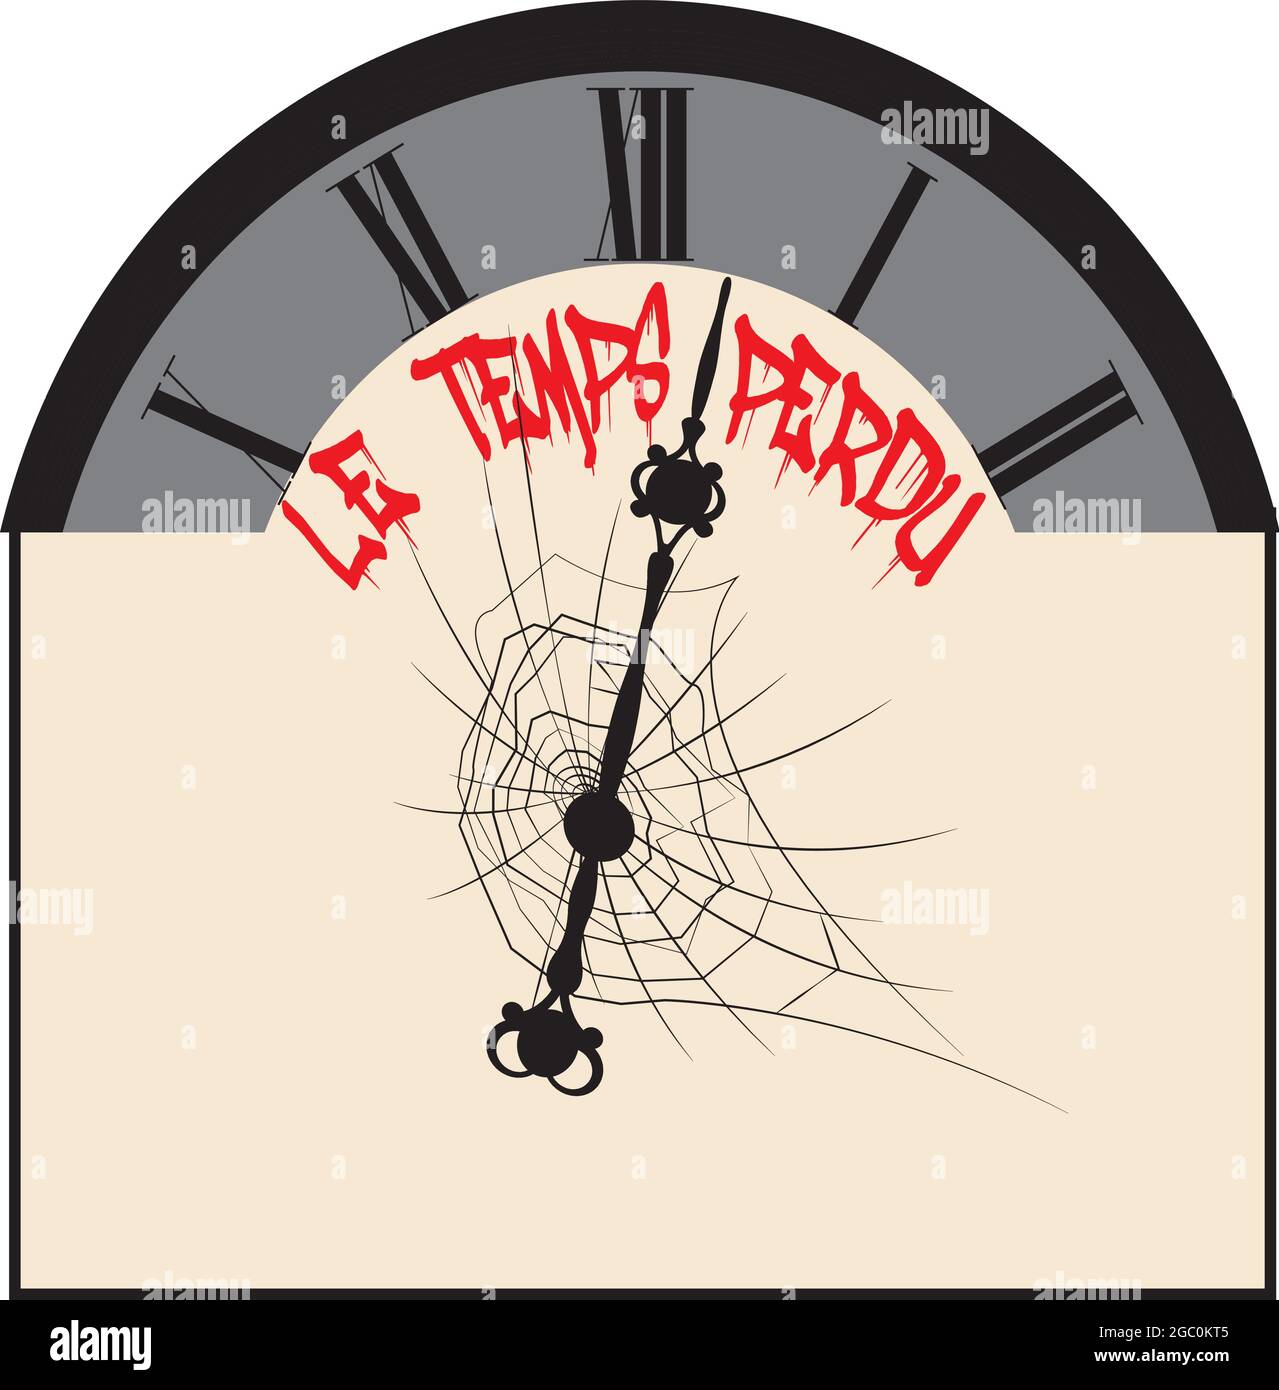 Illustration einer Uhr, die von Spiderweb bedeckt ist, um die Idee zu vermitteln, dass Zeit verloren geht und nicht wiederhergestellt werden kann Stock Vektor